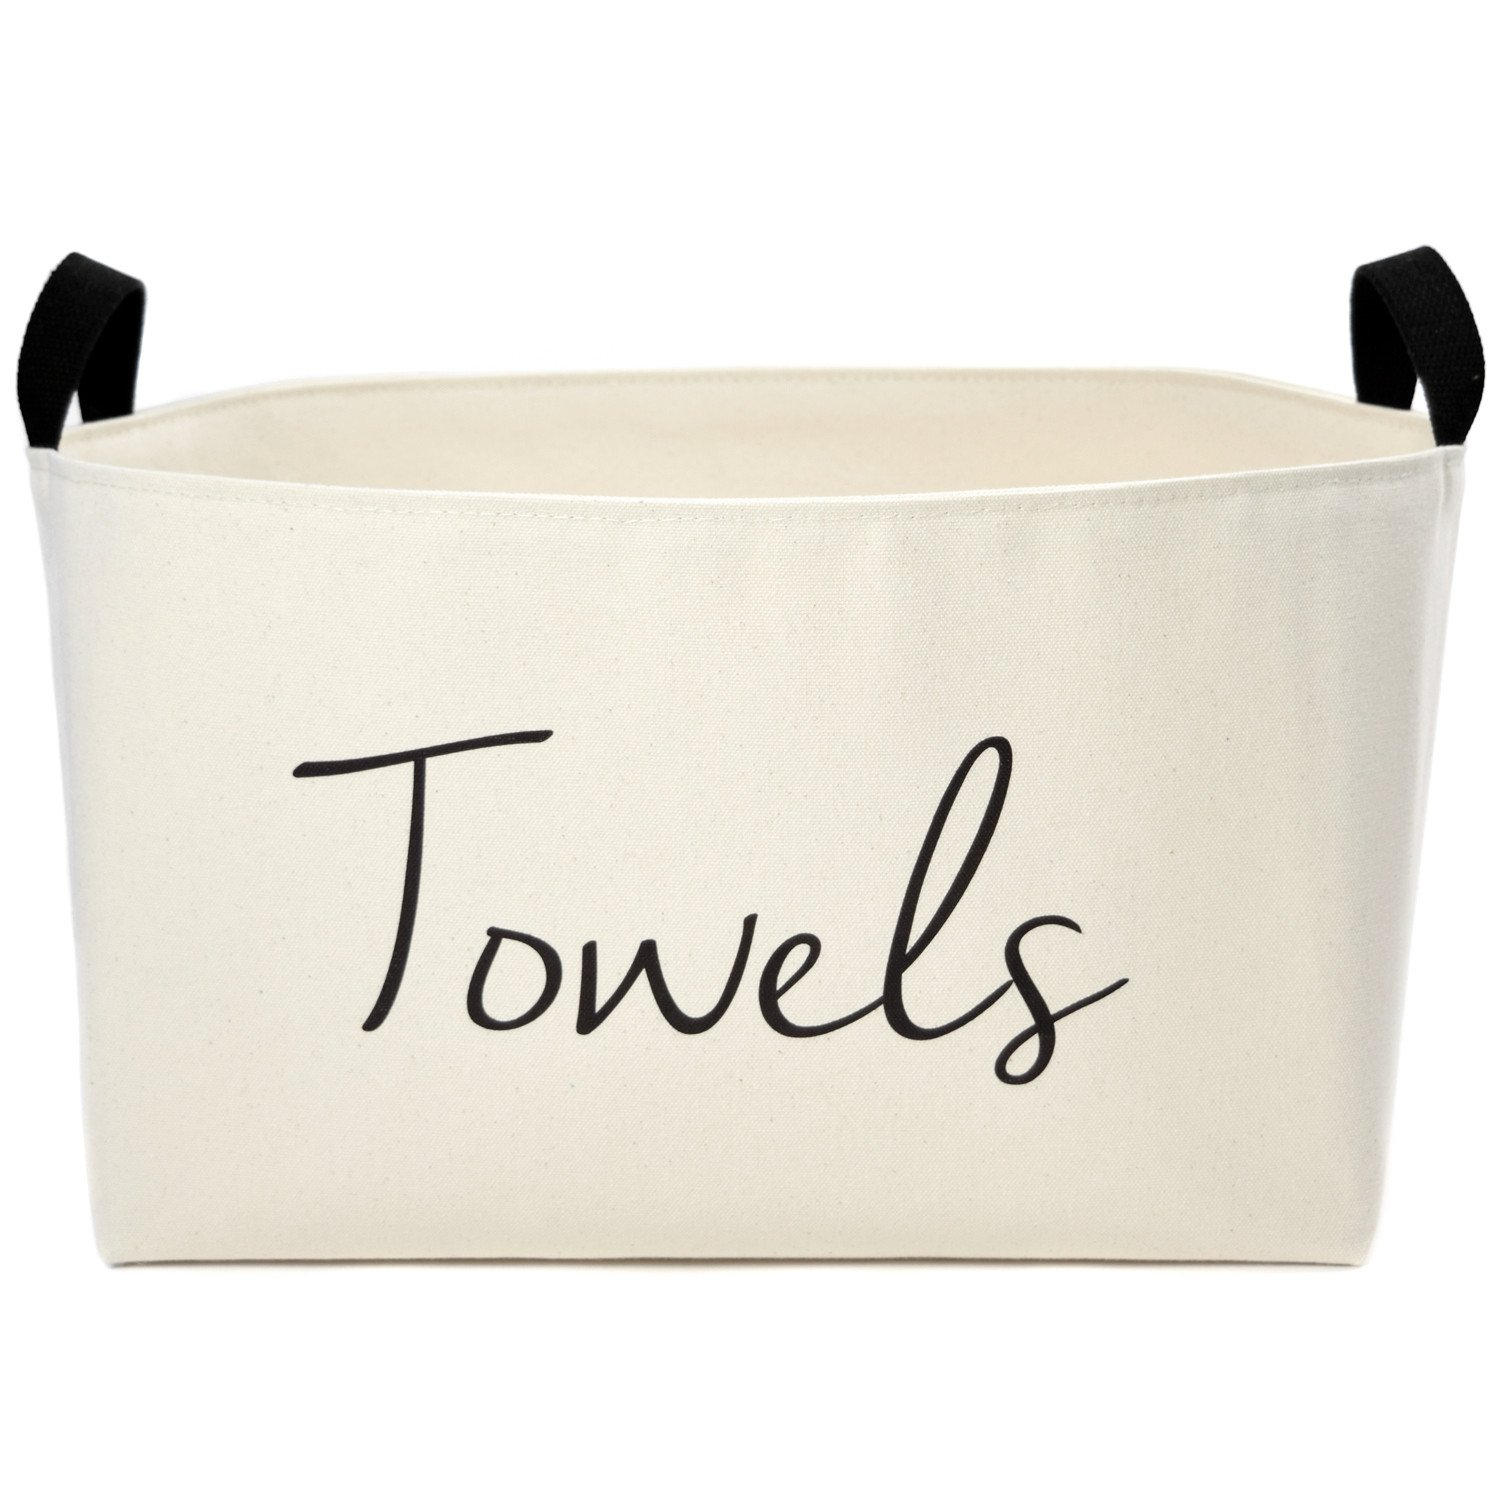 Towels Decorative Storage Bin Wish List 2018 Towel Storage inside dimensions 1500 X 1500